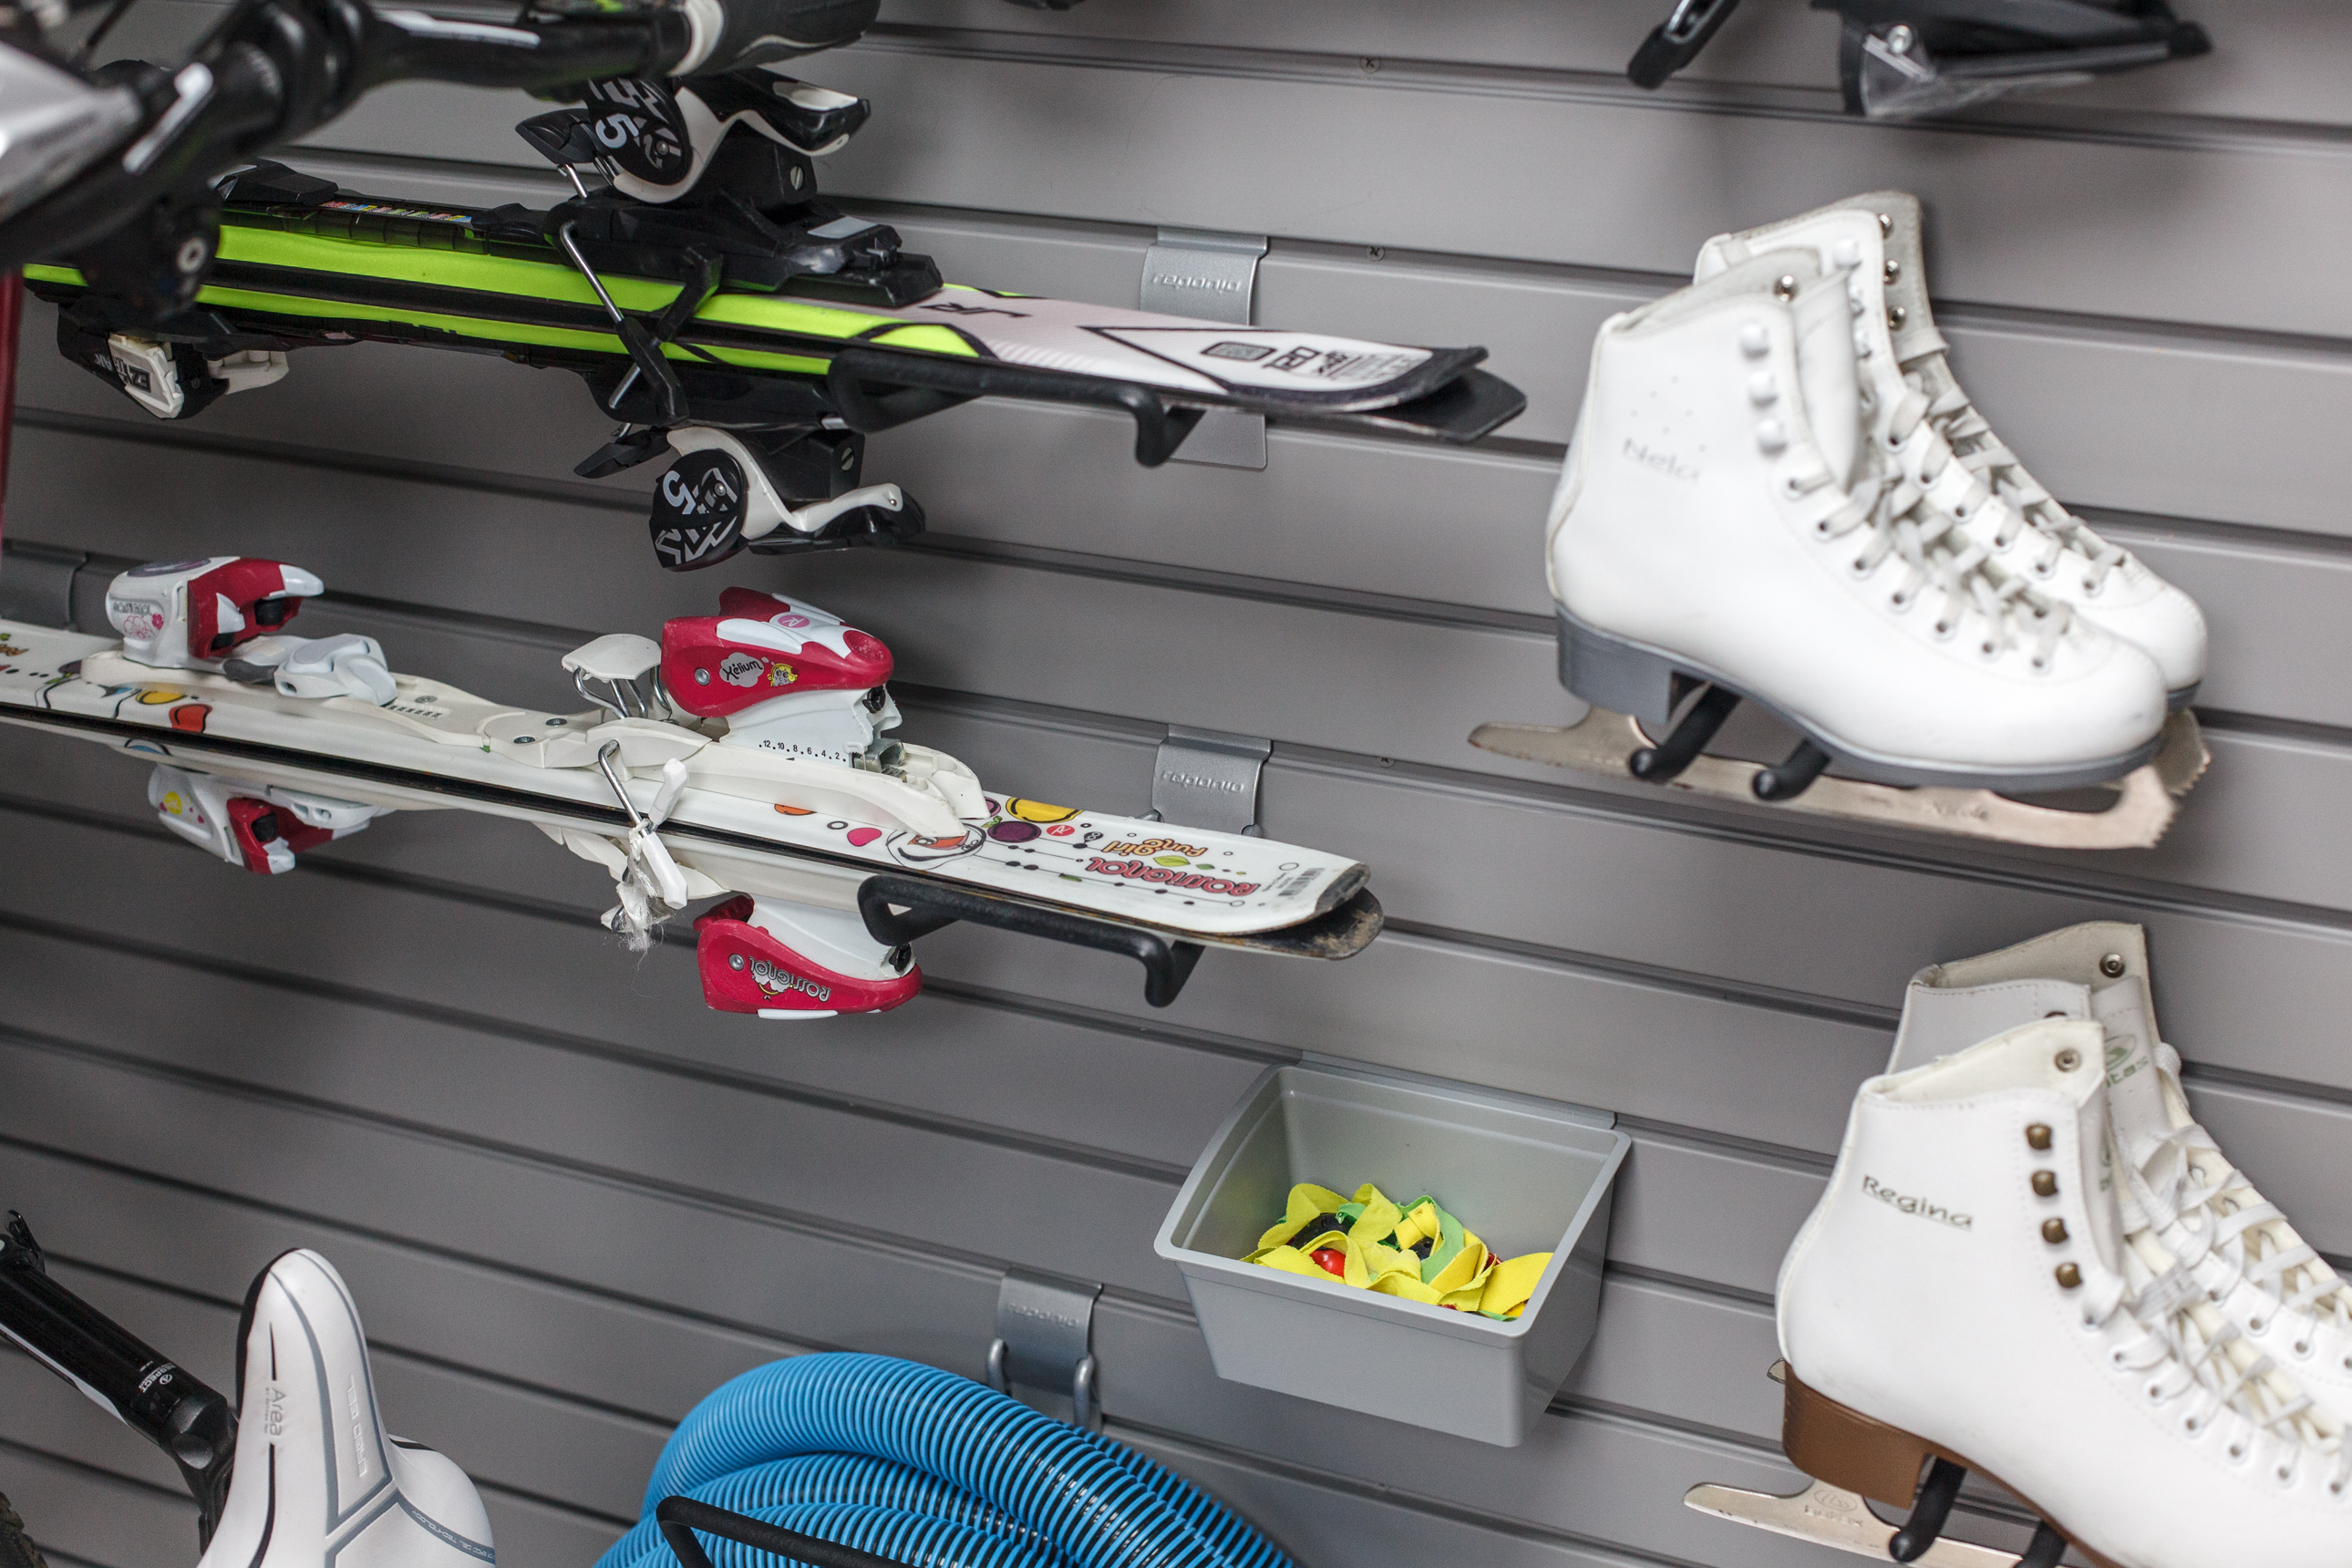 Skihalter an der Wand in der Garage. Wie wählt man eine stilvolle und funktionelle Lösung, die für Langlaufski und Snowboards geeignet ist?